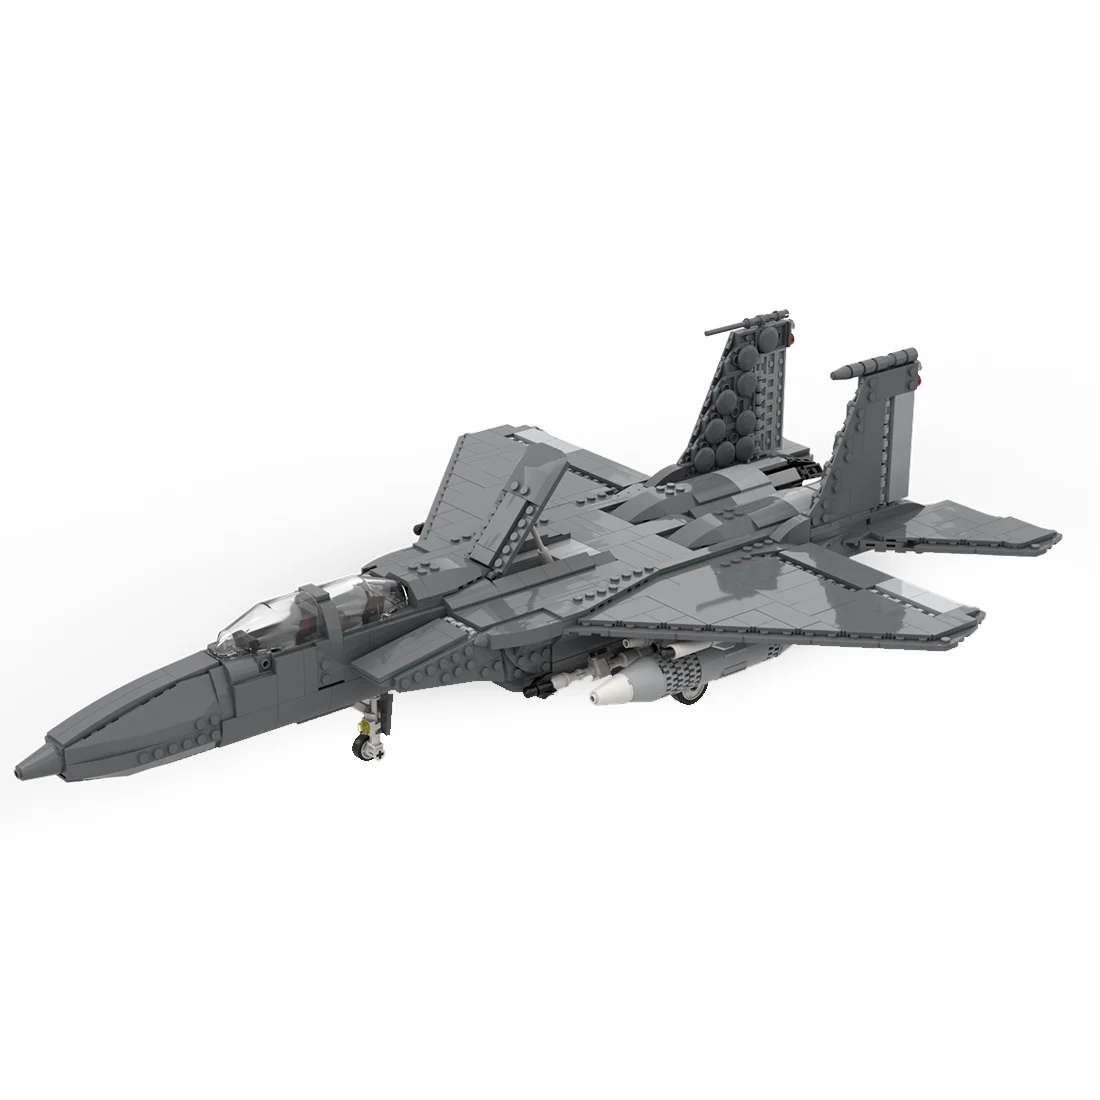 Авторизованный MOC-29950 F-15 E Strike Eagle, набор игрушек в военной тематике, строительные блоки (1261 шт.)